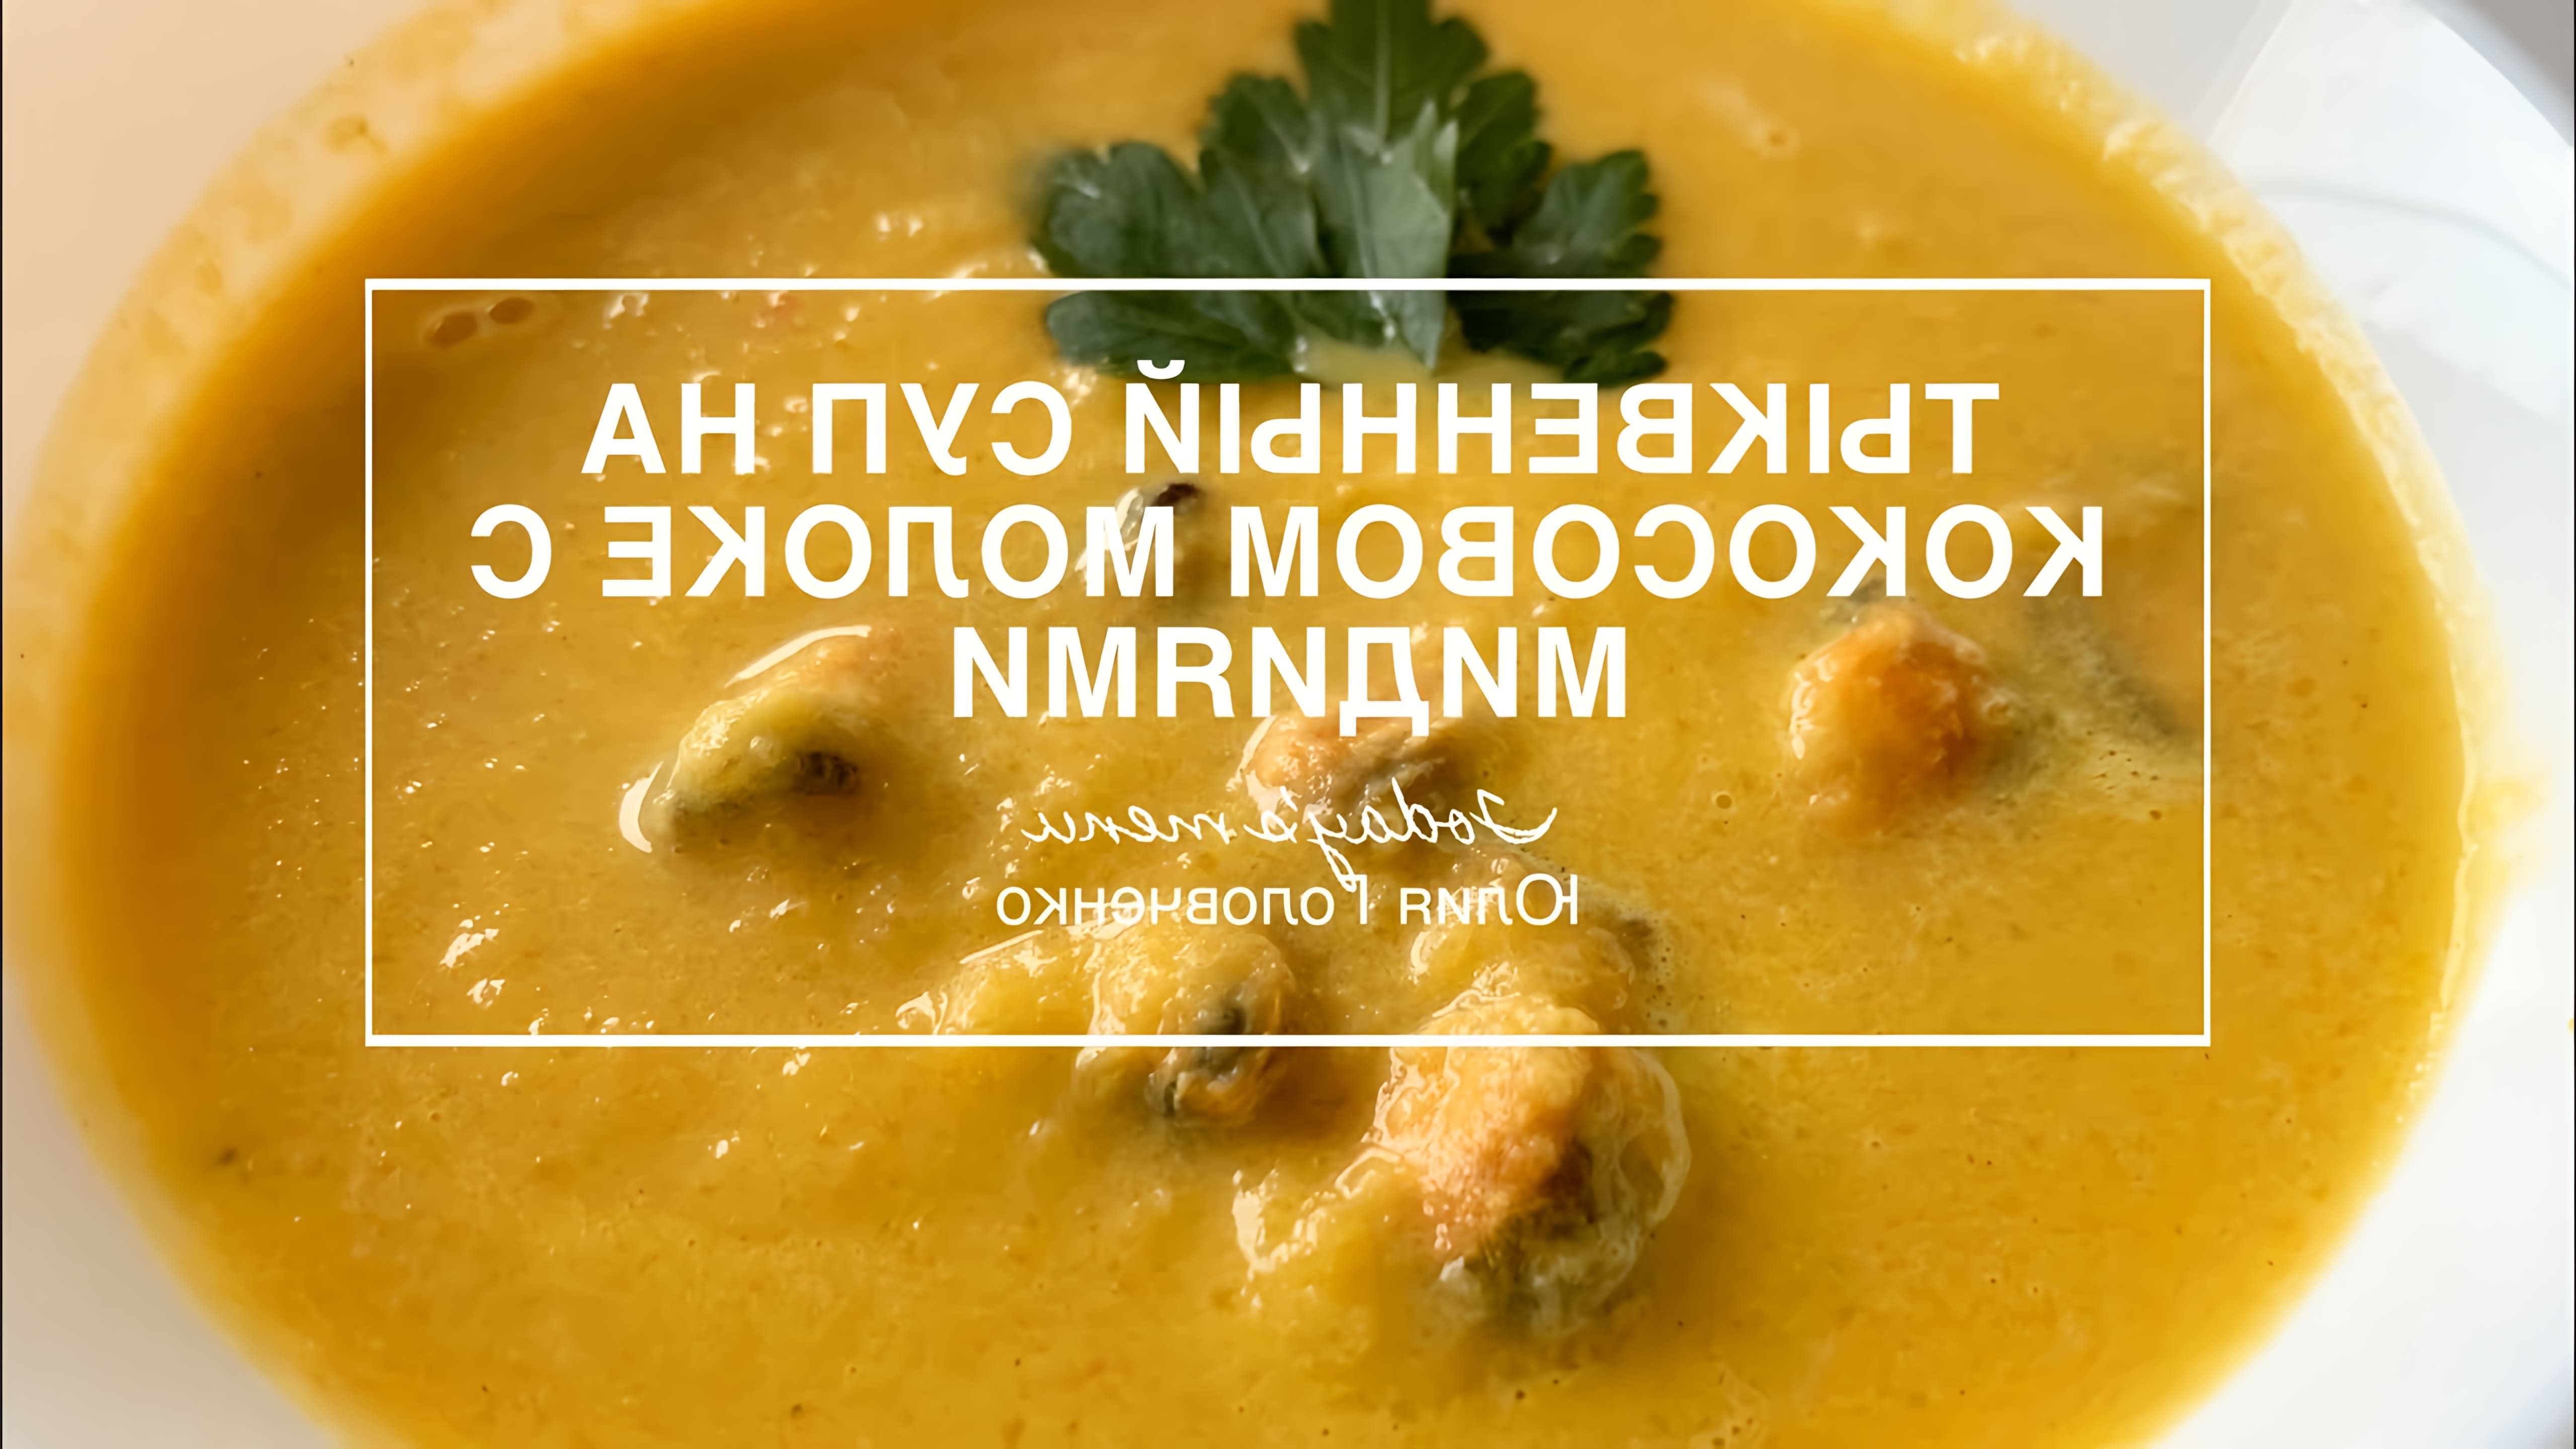 В этом видео-ролике будет представлен рецепт приготовления вкусного и питательного тыквенного супа с мидиями на кокосовом молоке